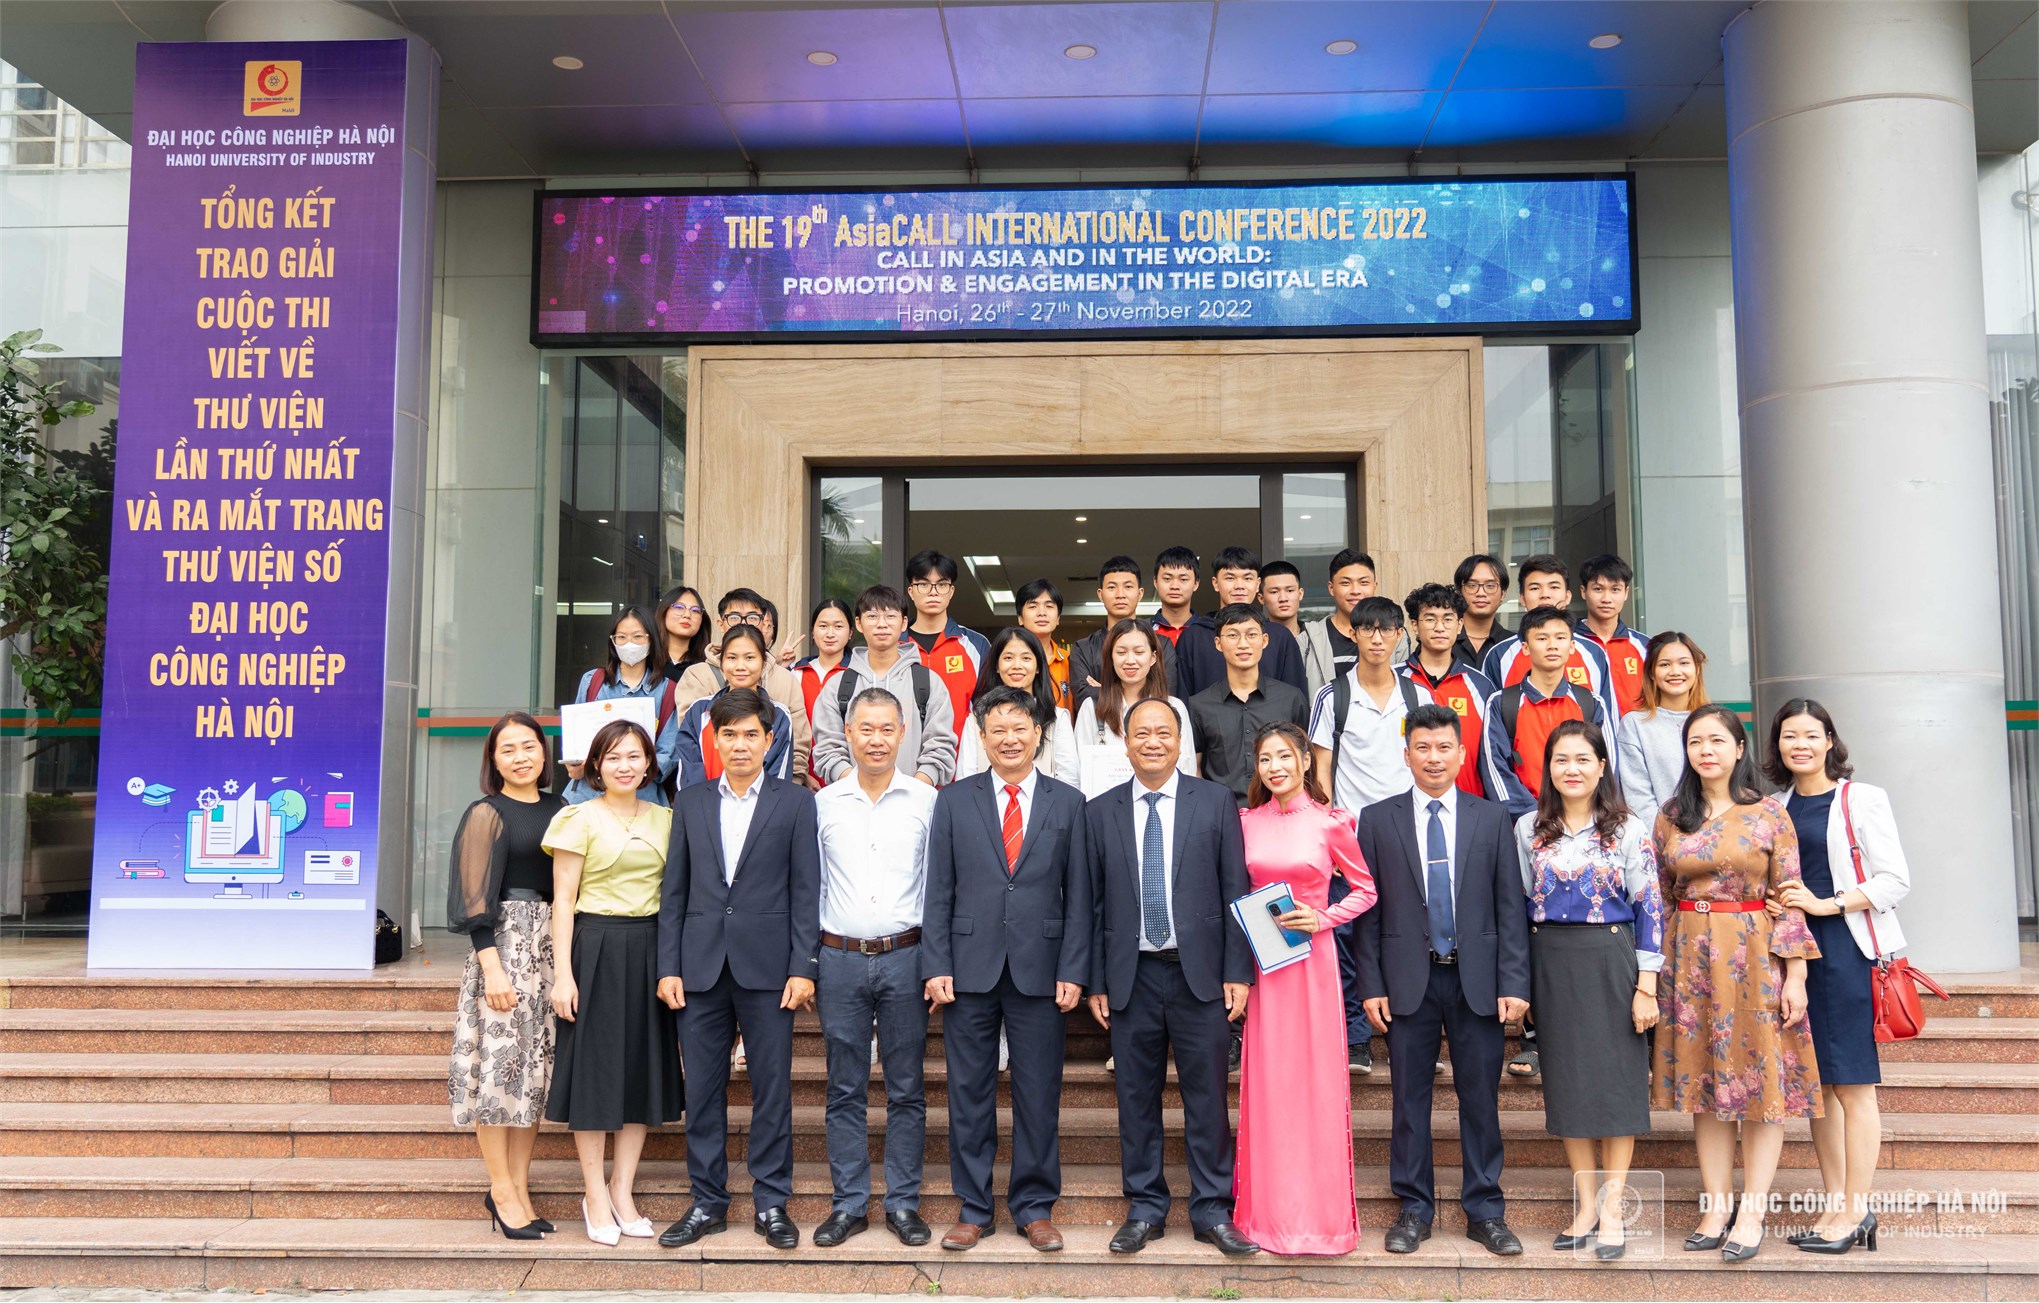 Ra mắt trang thư viện số trường Đại học Công nghiệp Hà Nội